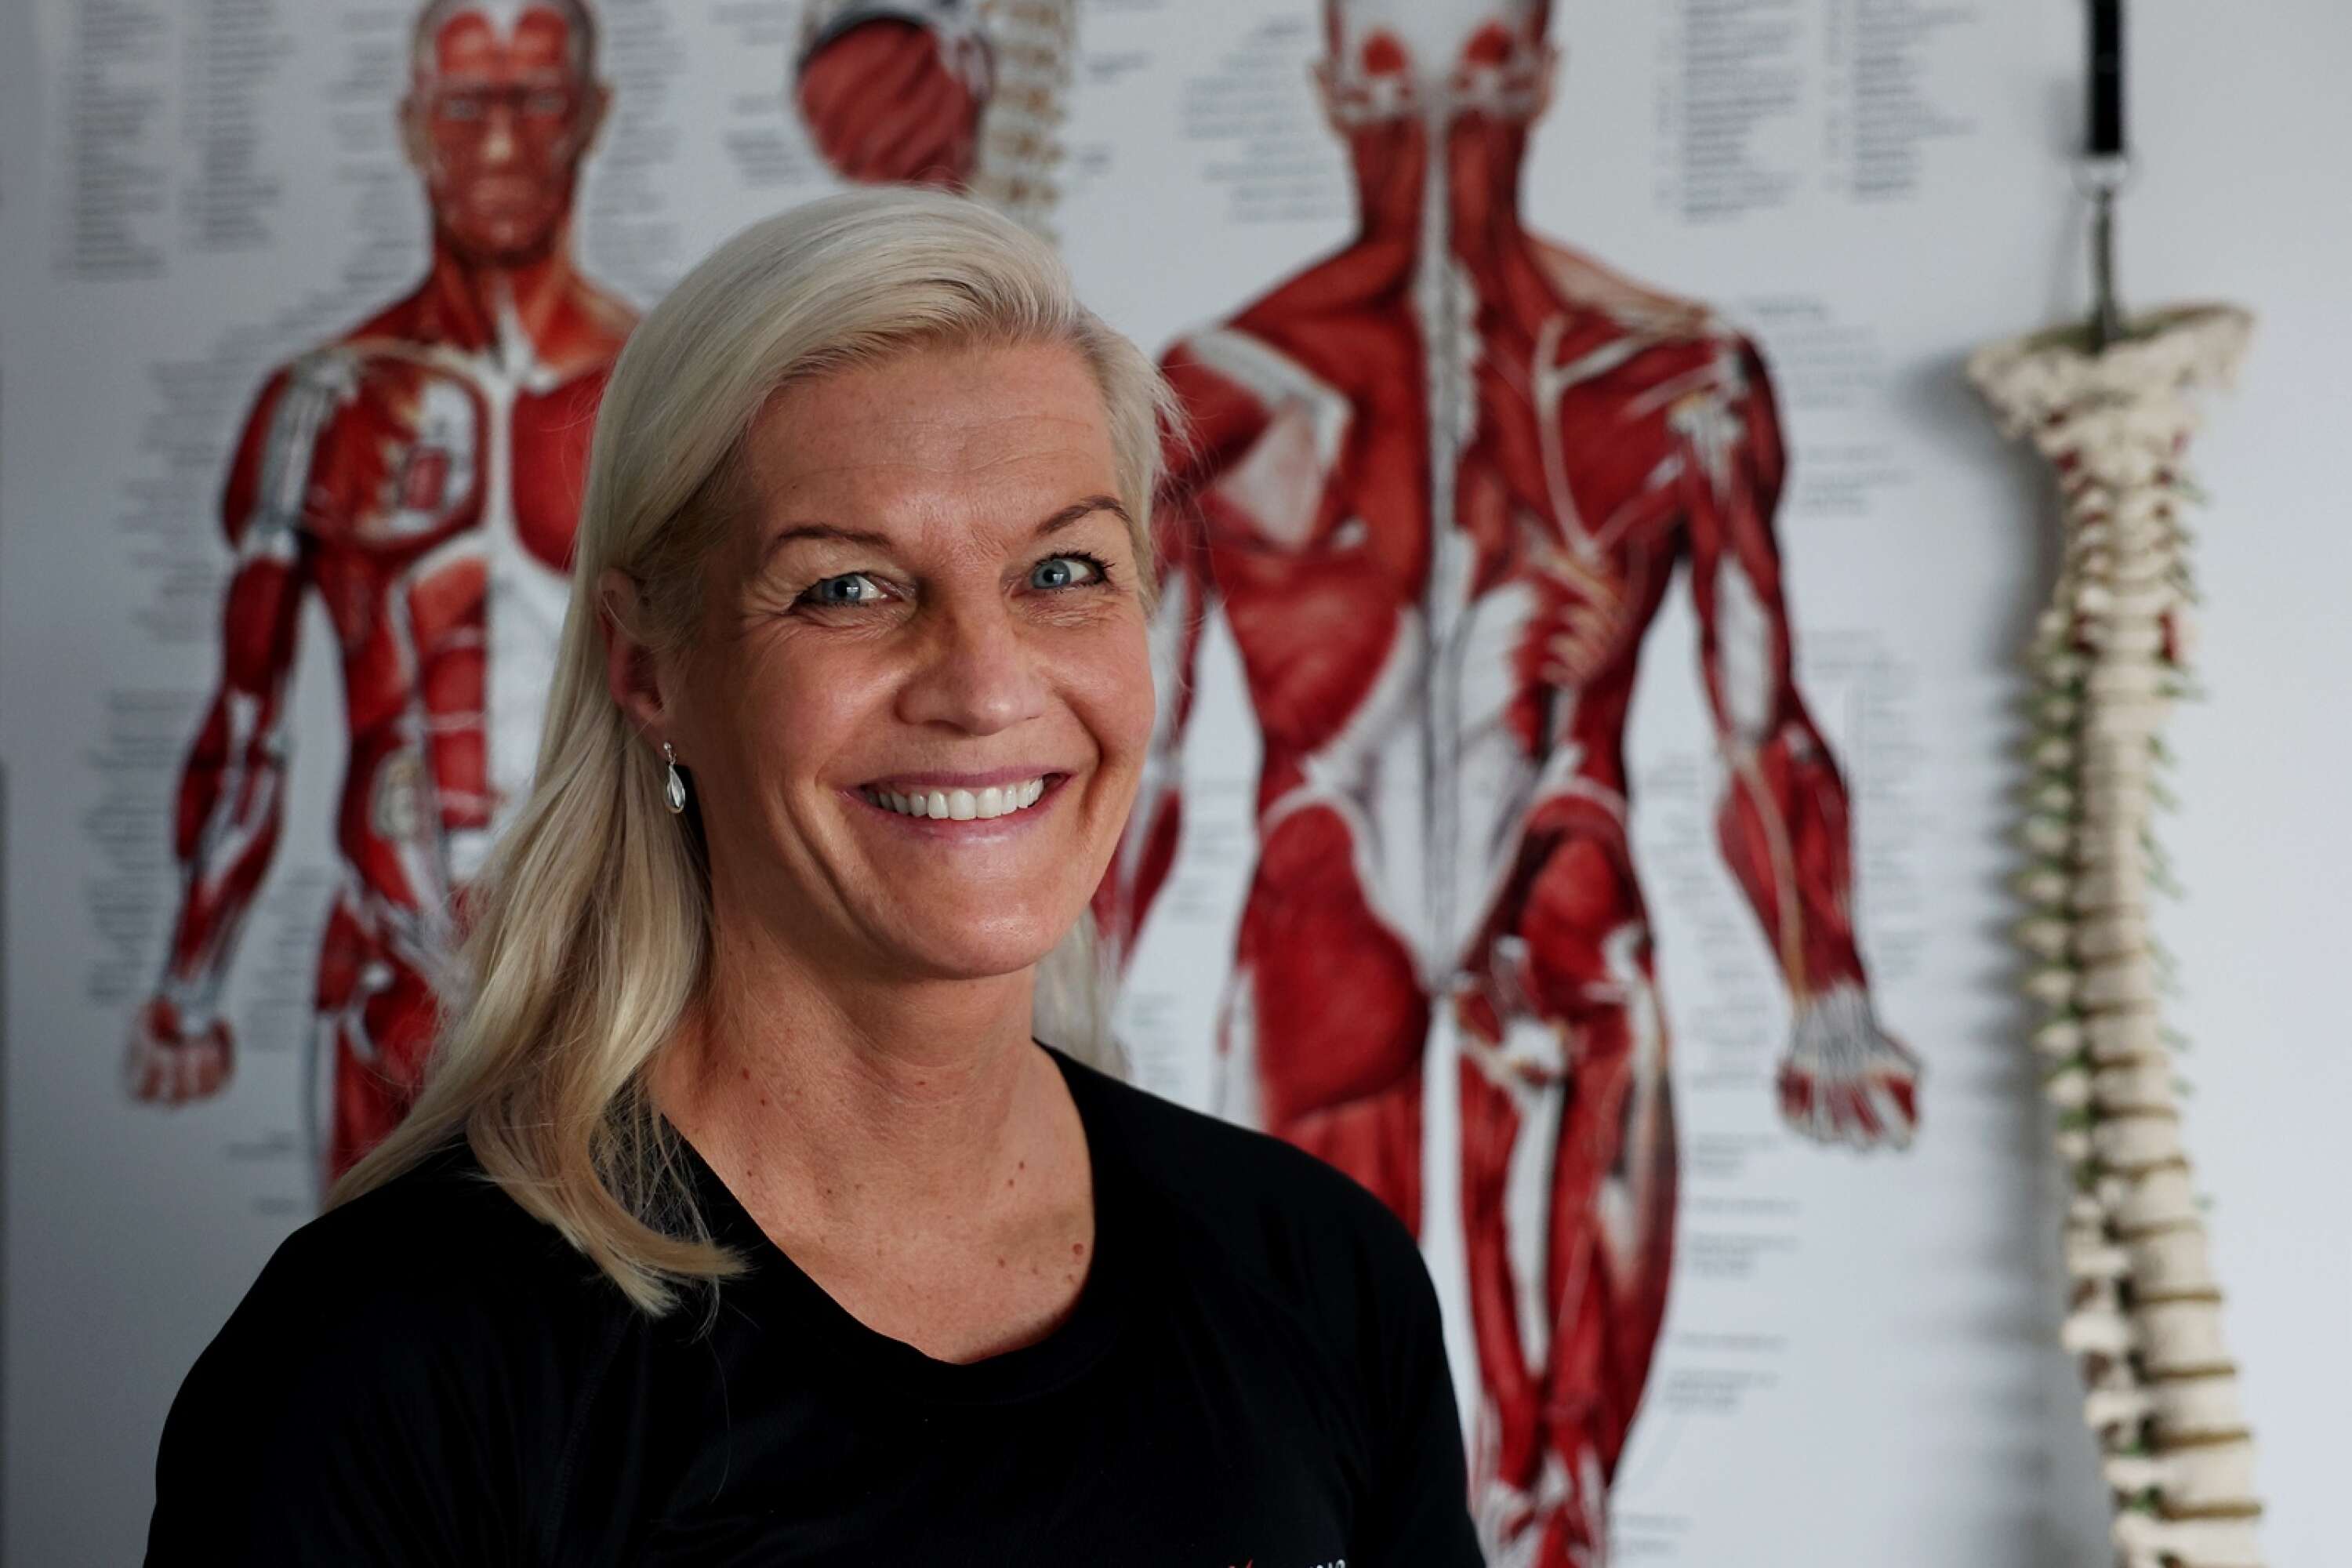 I 30 år har Kajsa Persson jobbat med att hjälpa andra med akuta muskelskador, träning och kost.